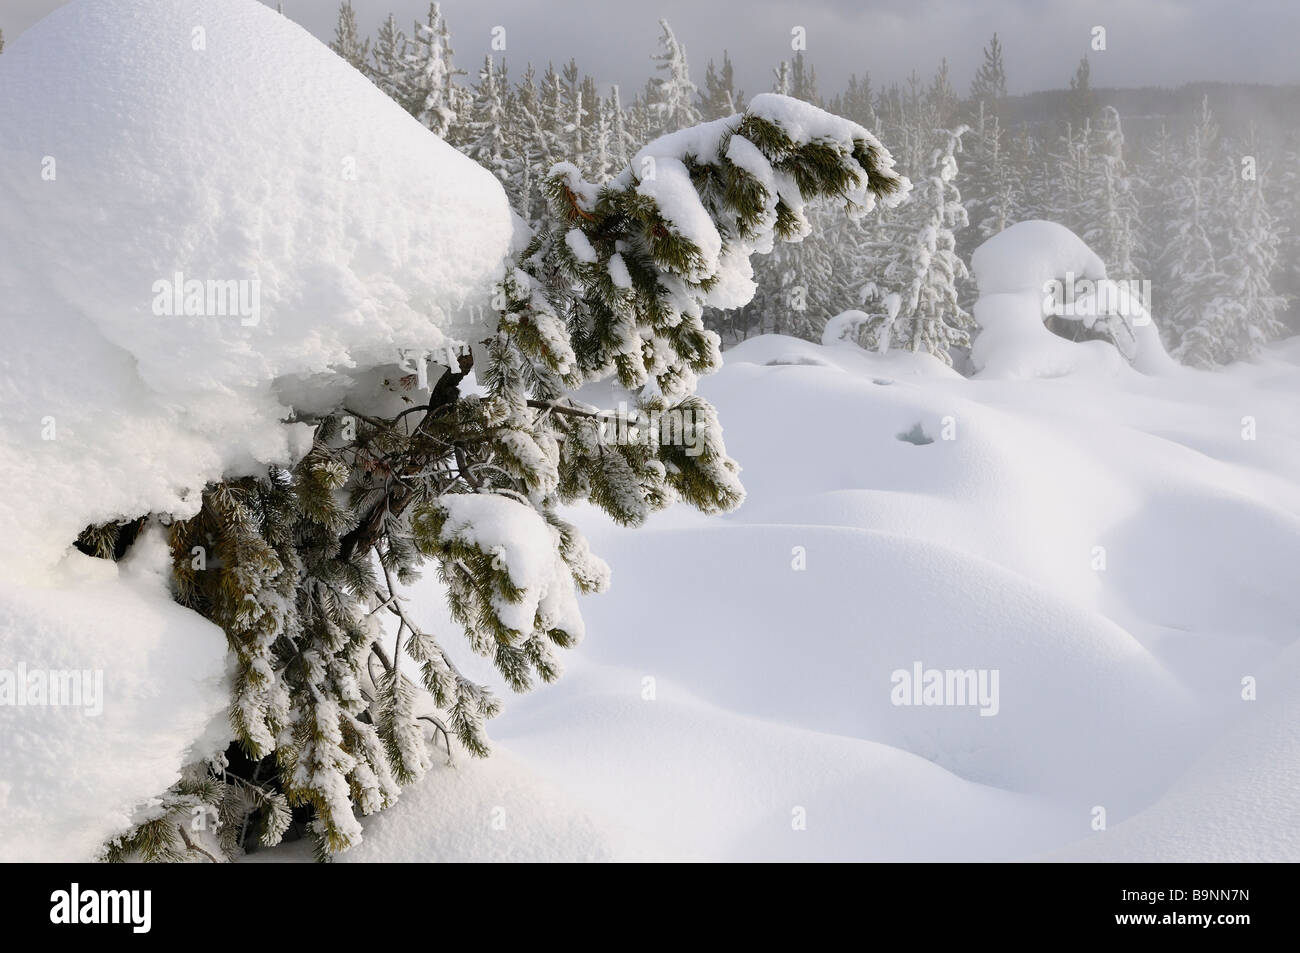 Bosque de pino Lodgepole cubierto de nieve cerca de vapor de las aguas termales de Norris Geyser Basin del Parque Nacional Yellowstone, Wyoming, EE.UU. en invierno al atardecer Foto de stock